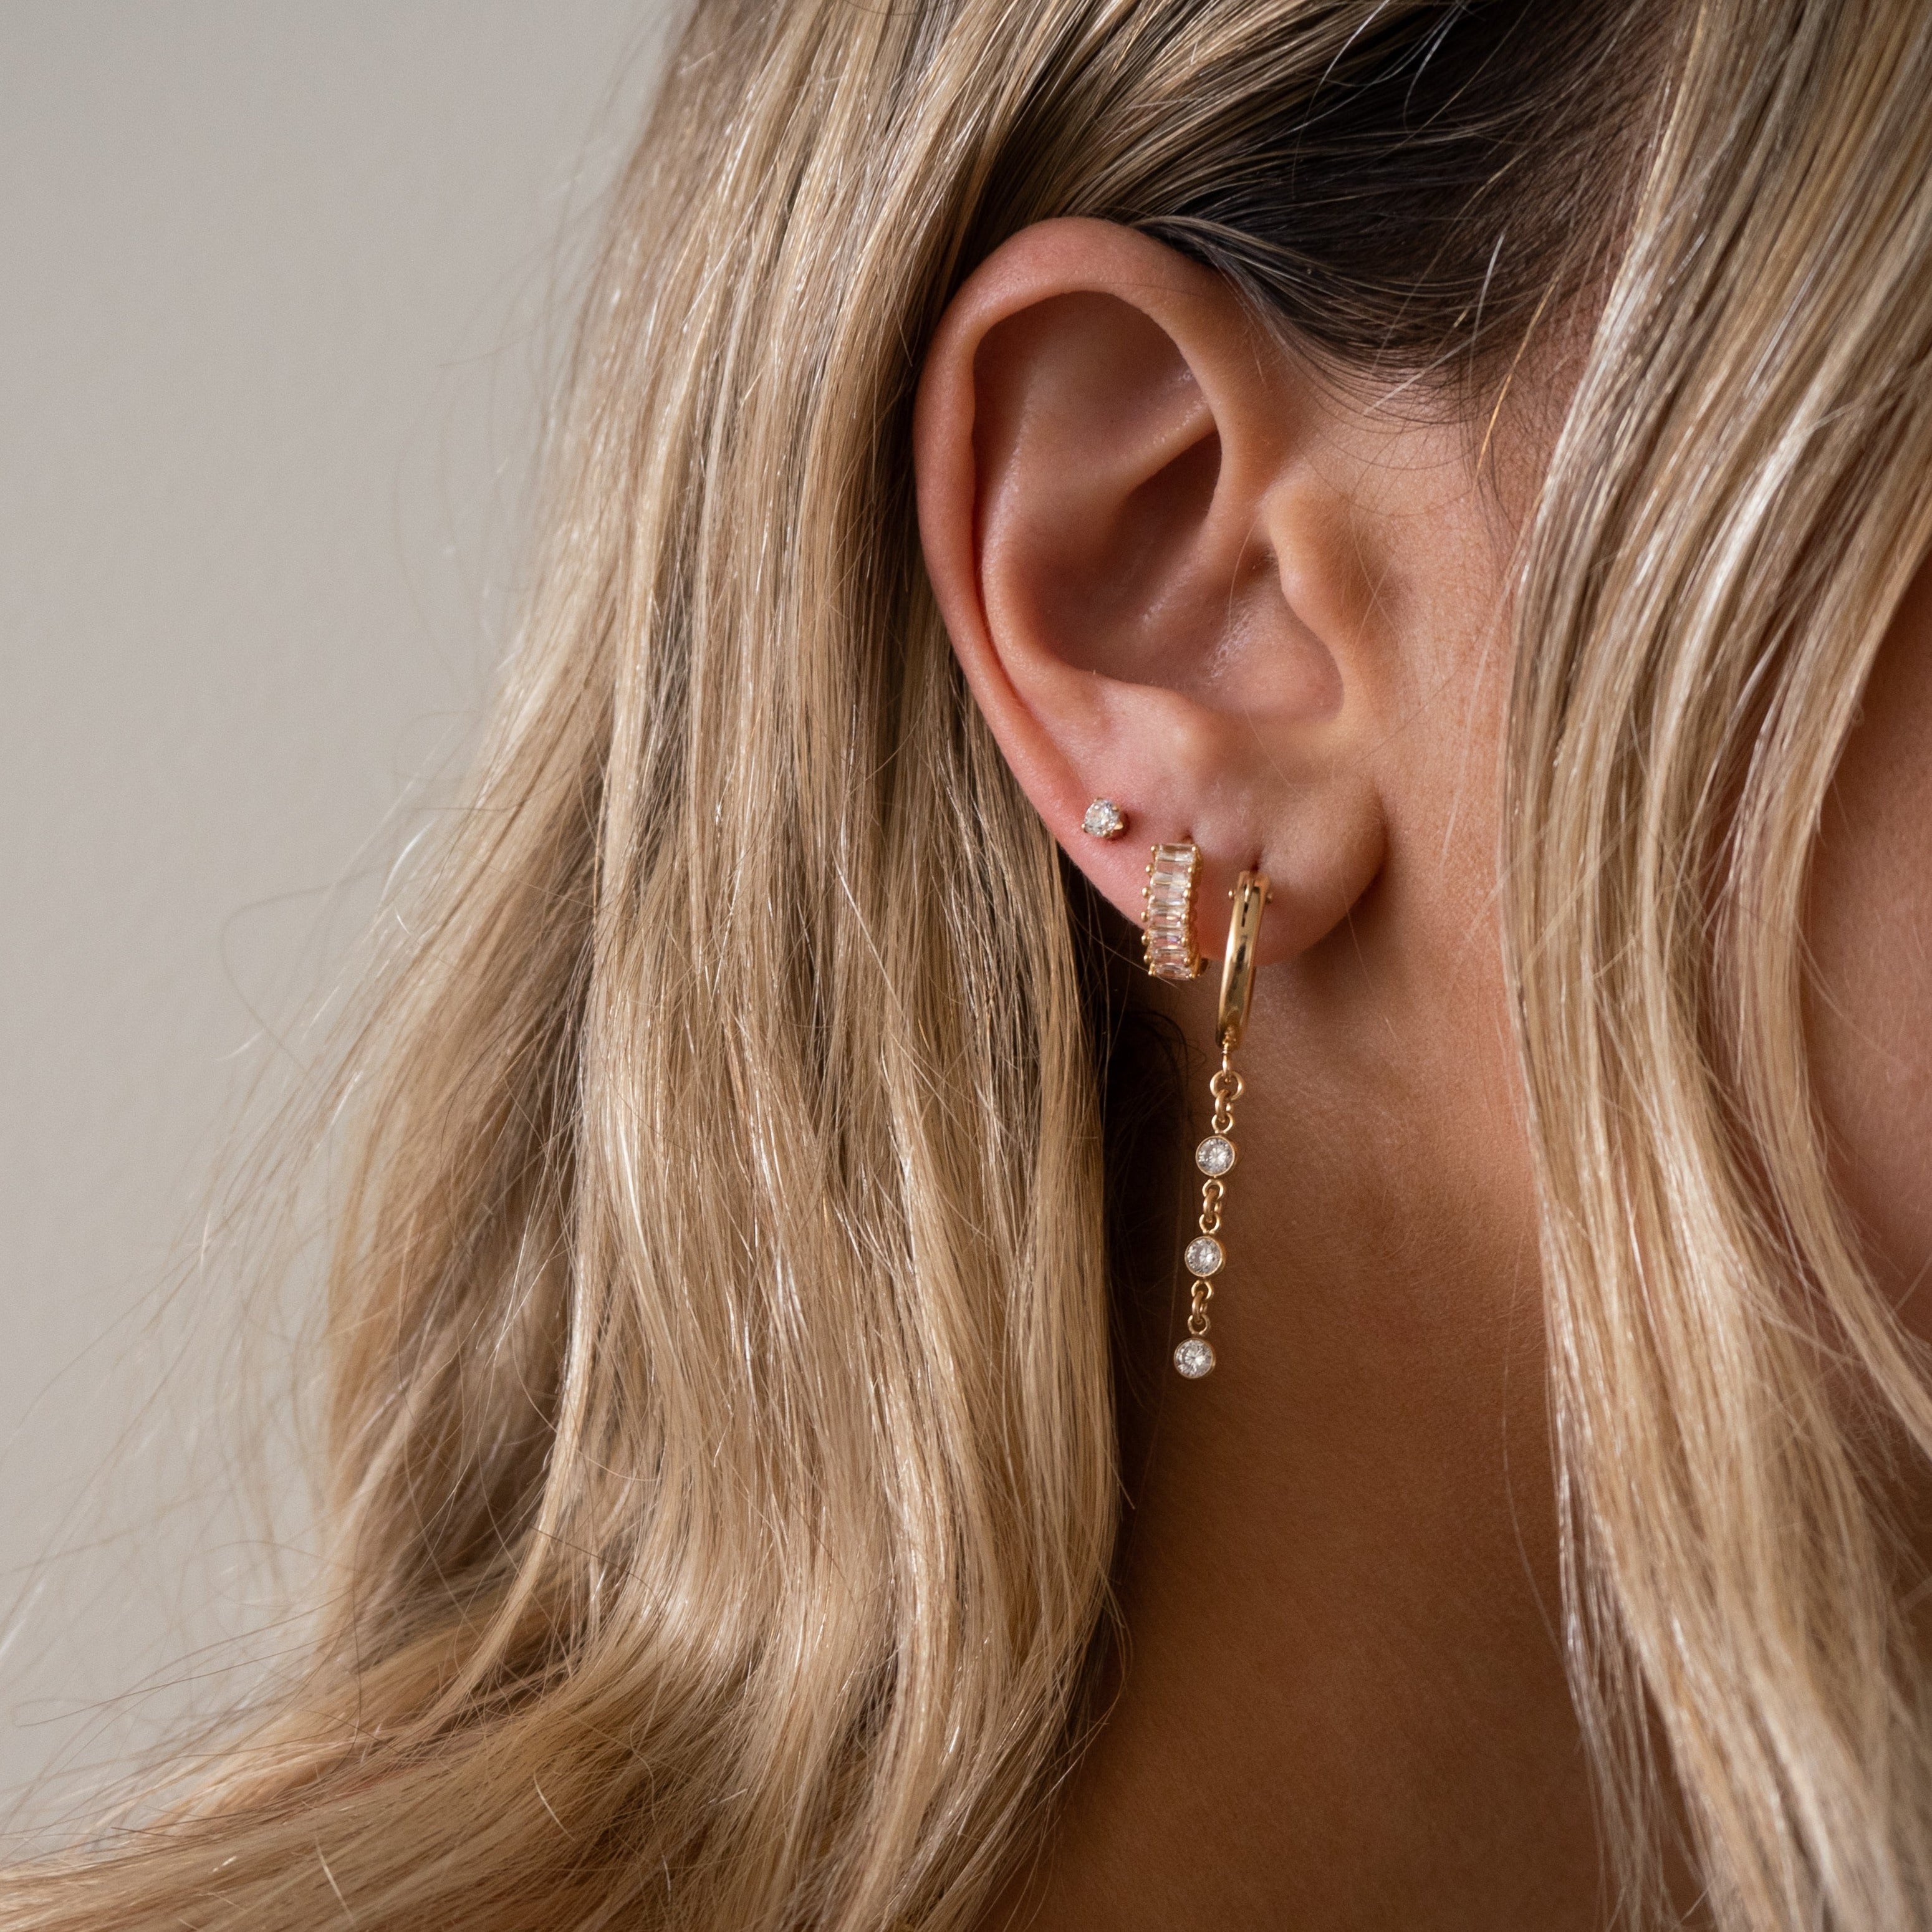 Aubree earrings